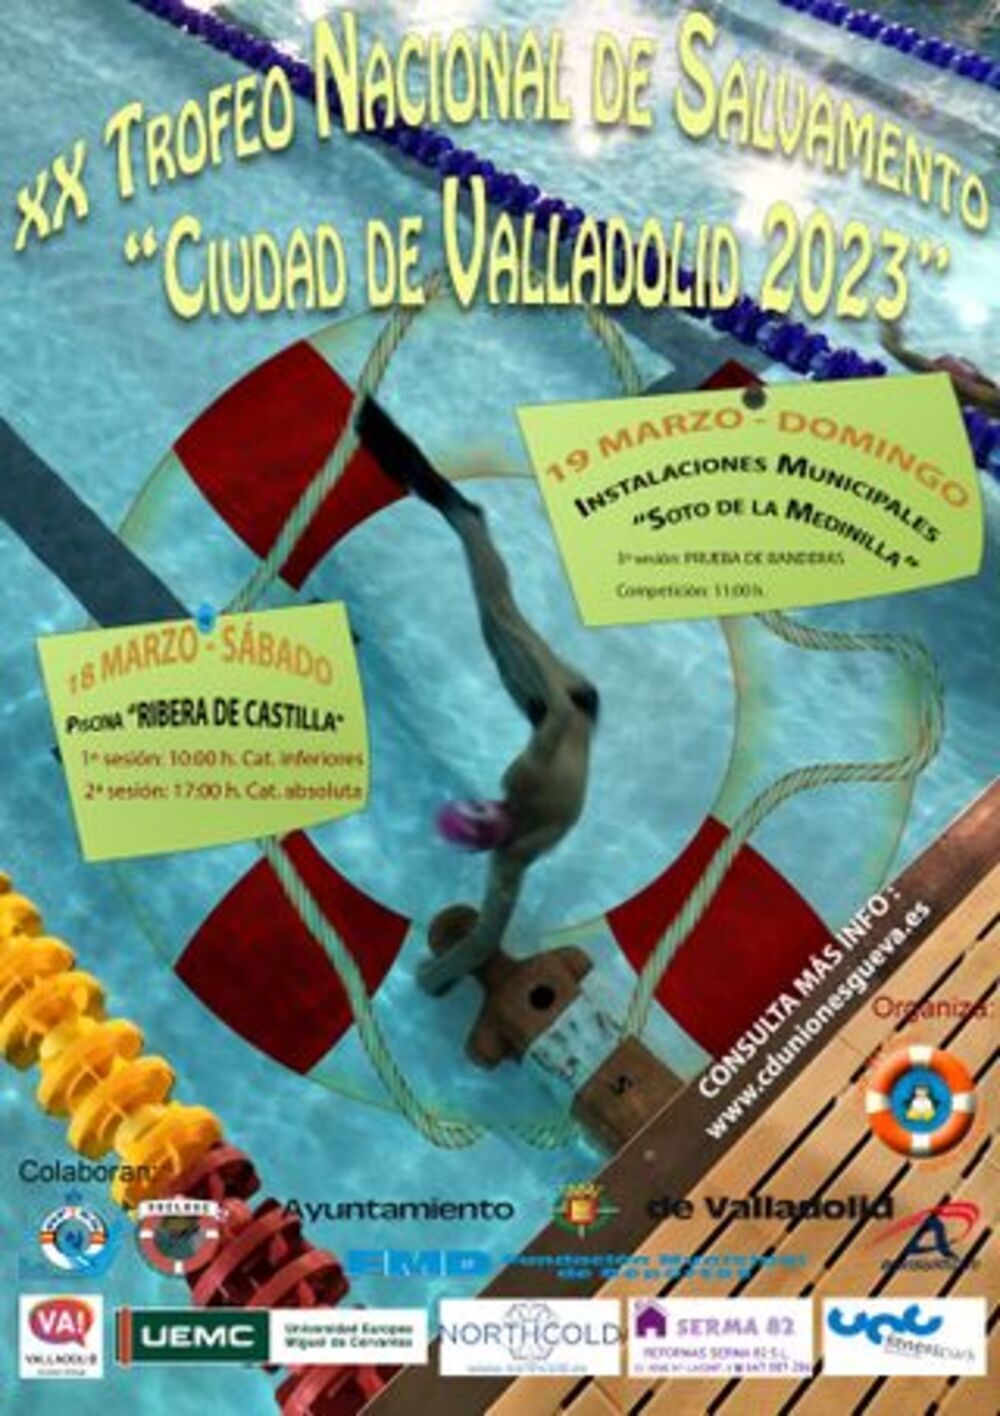 El Trofeo Ciudad de Valladolid reunirá a 400 socorristas